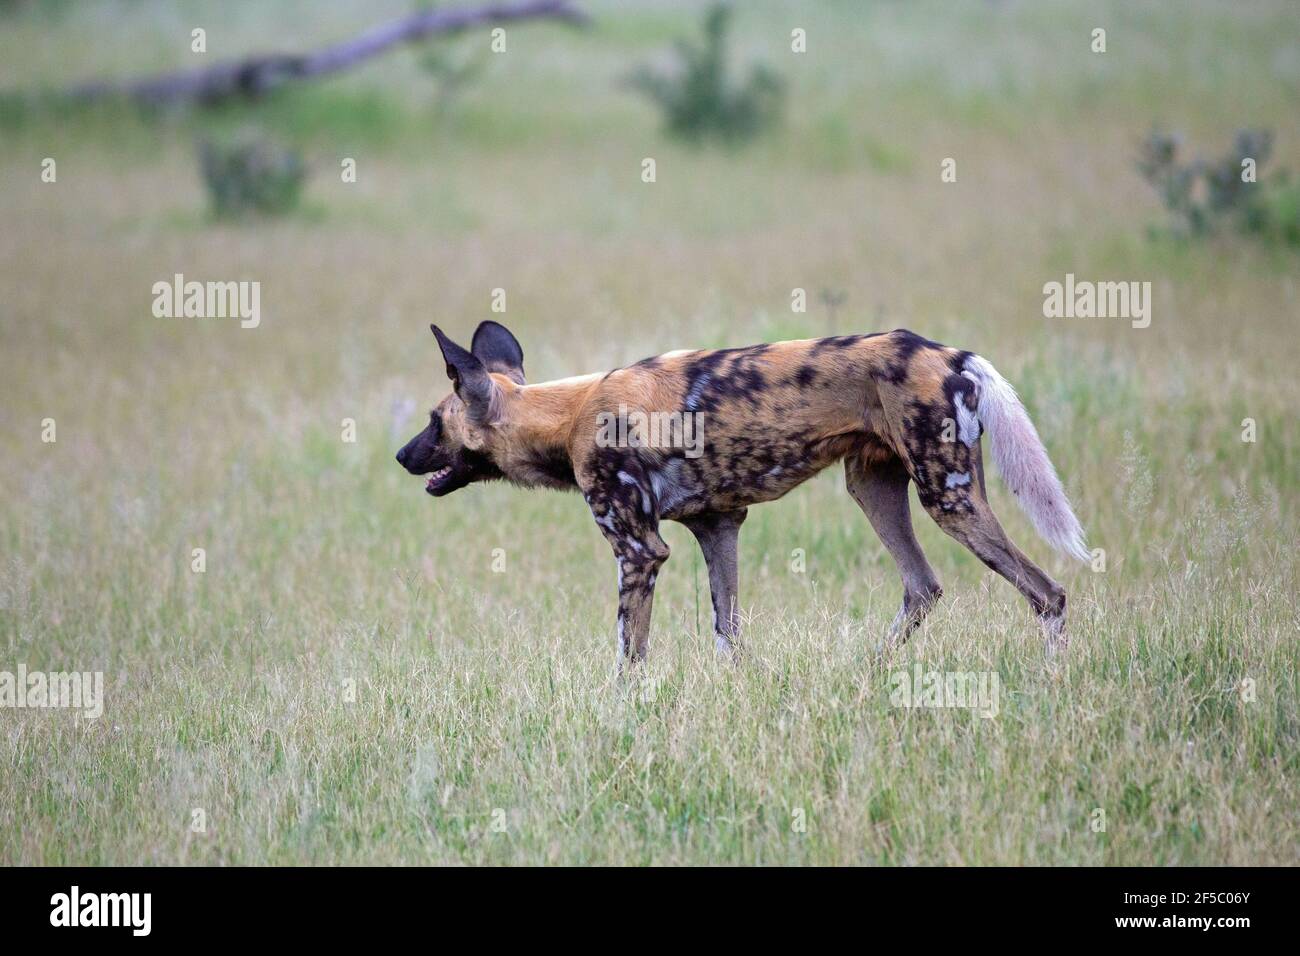 Cane selvatico africano di caccia, o lupo dipinto (Lycaon pictus). In una fila in su con altri ad una distanza che attende in previsione di animali di preda che tentano t Foto Stock